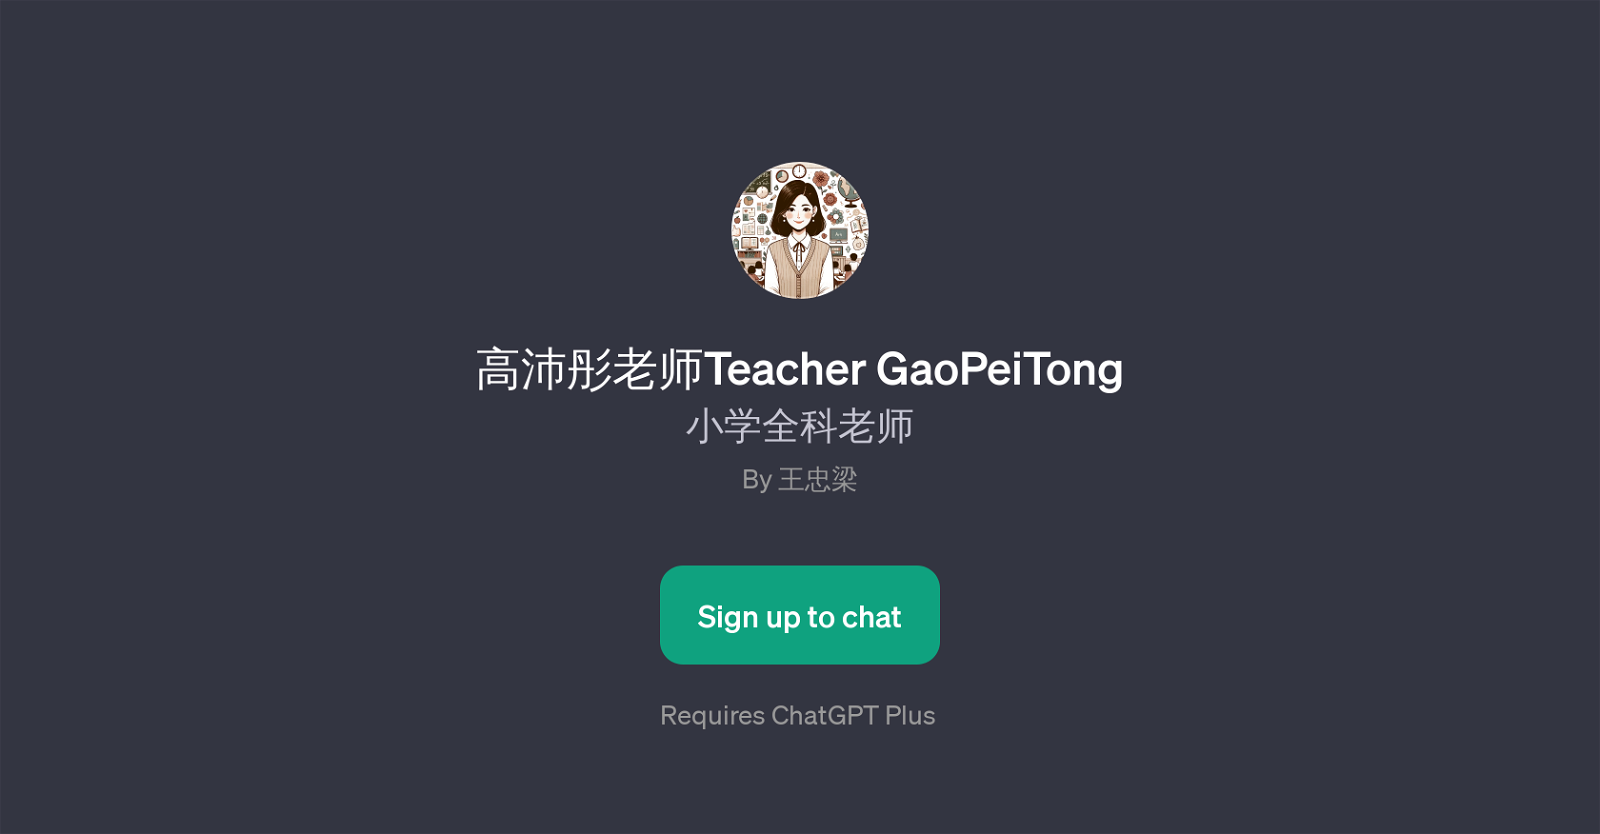 Teacher GaoPeiTong website